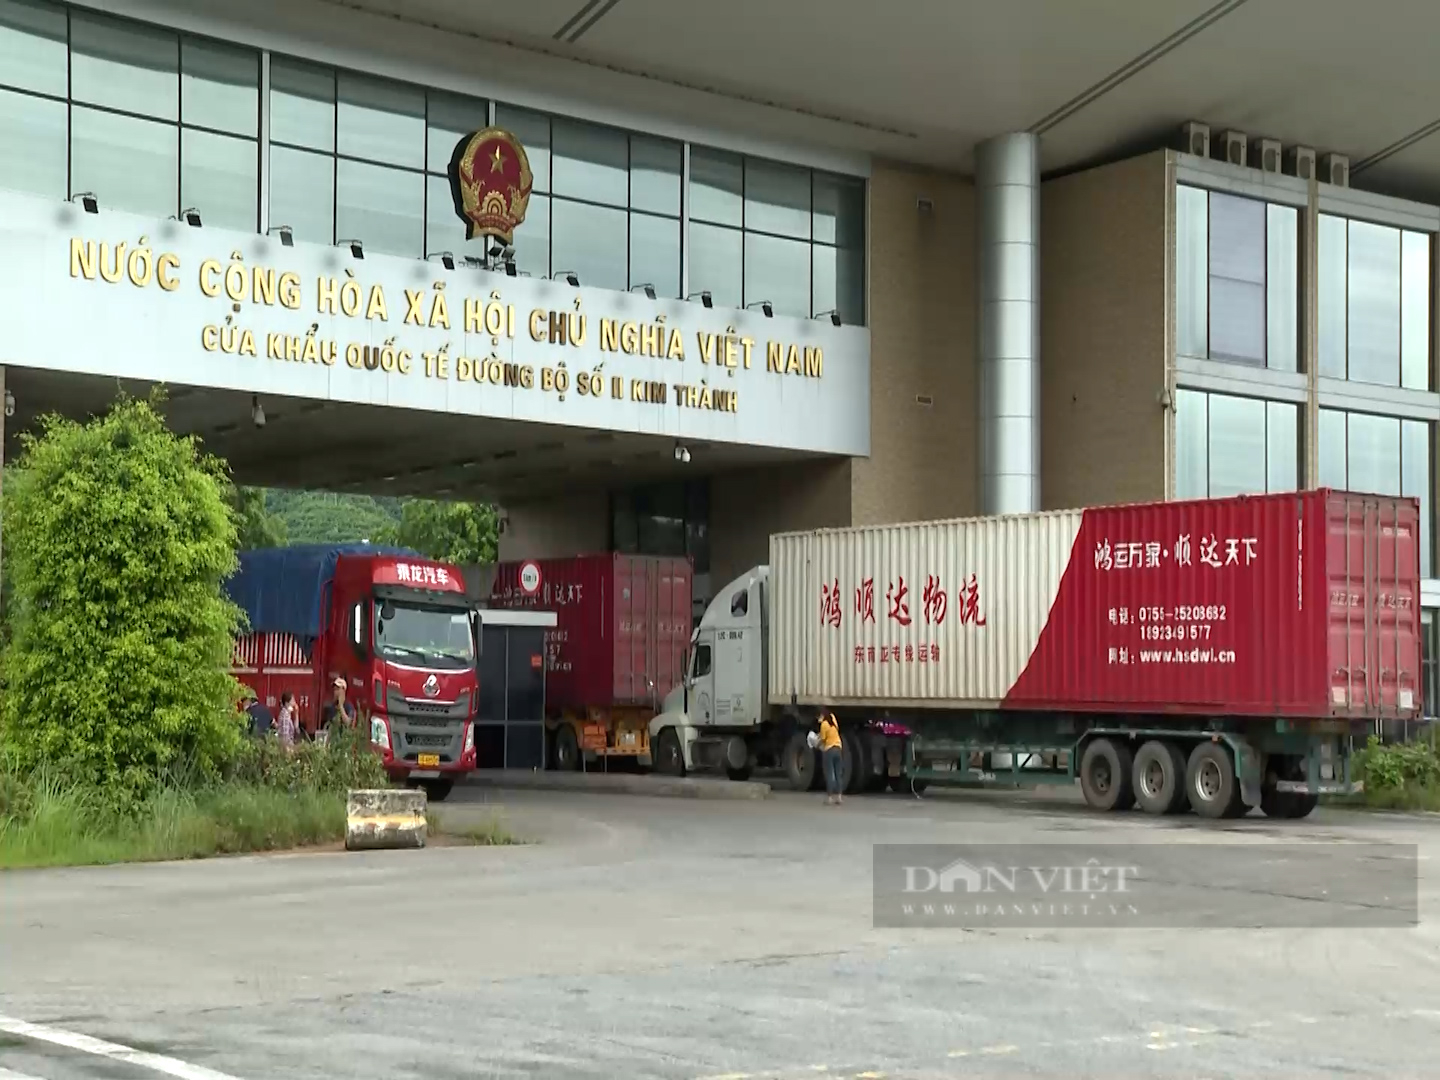 Lào Cai: Tạm dừng xuất nhập khẩu qua Cửa khẩu Quốc tế đường bộ số II Kim Thành - Ảnh 1.